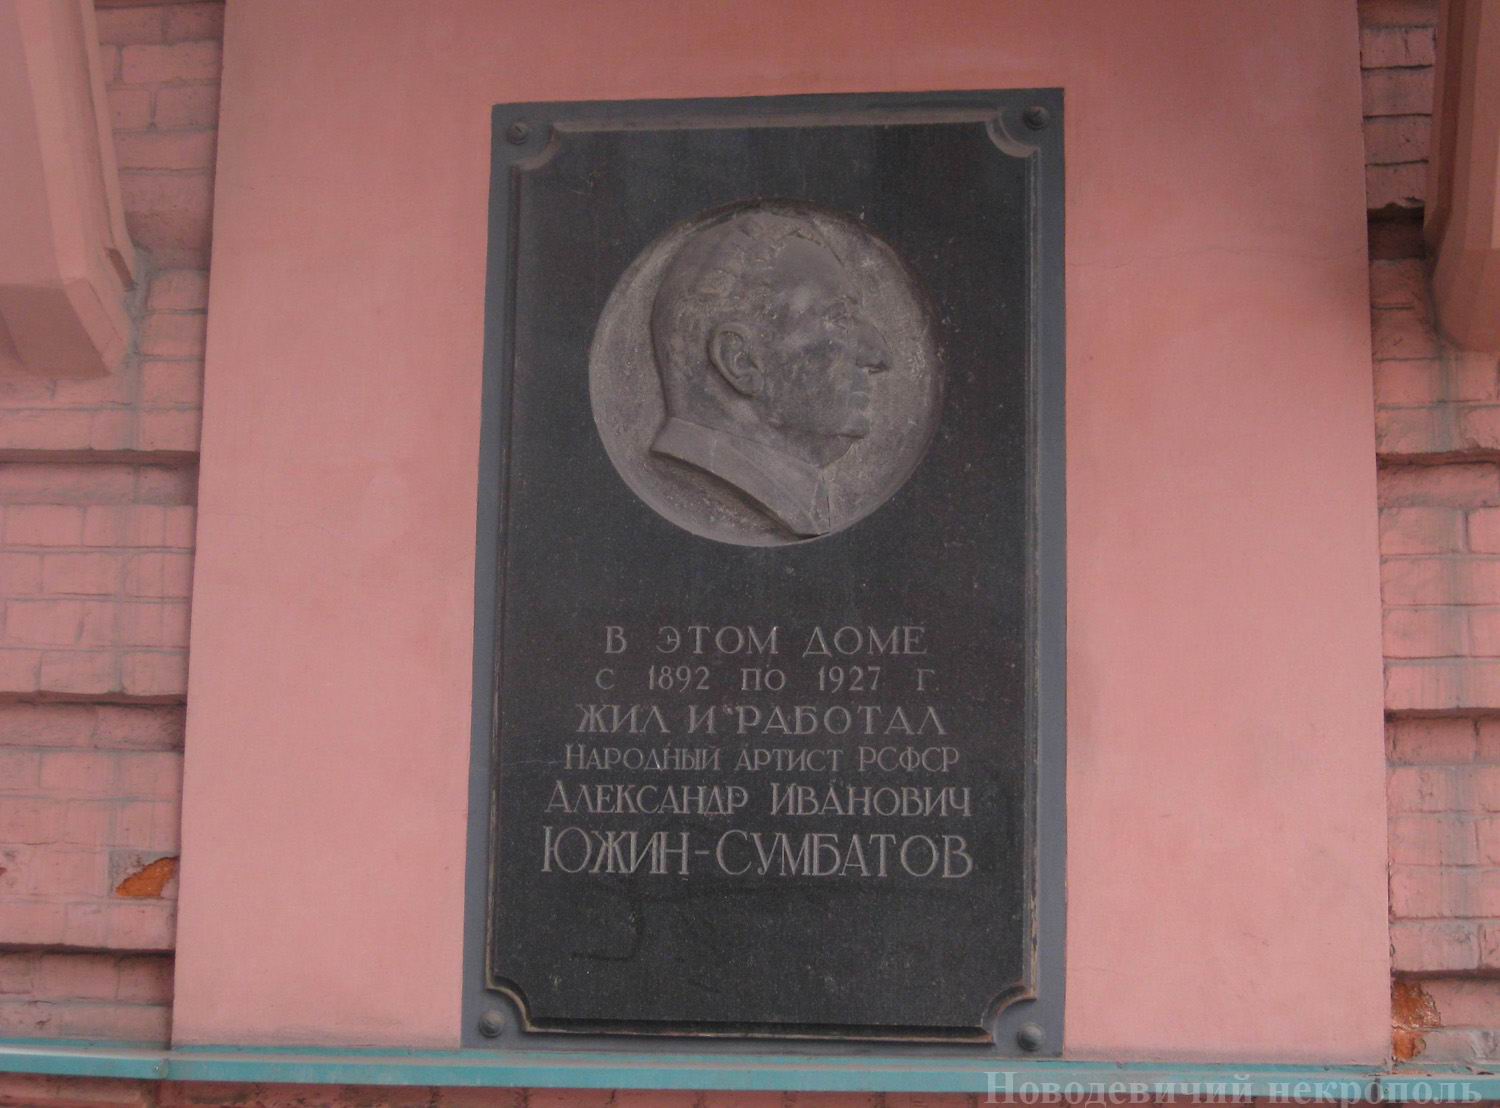 Мемориальная доска Сумбатову-Южину А.И. (1857–1927), в Большом Палашевском переулке, дом 5/1, открыта 27.10.1959.